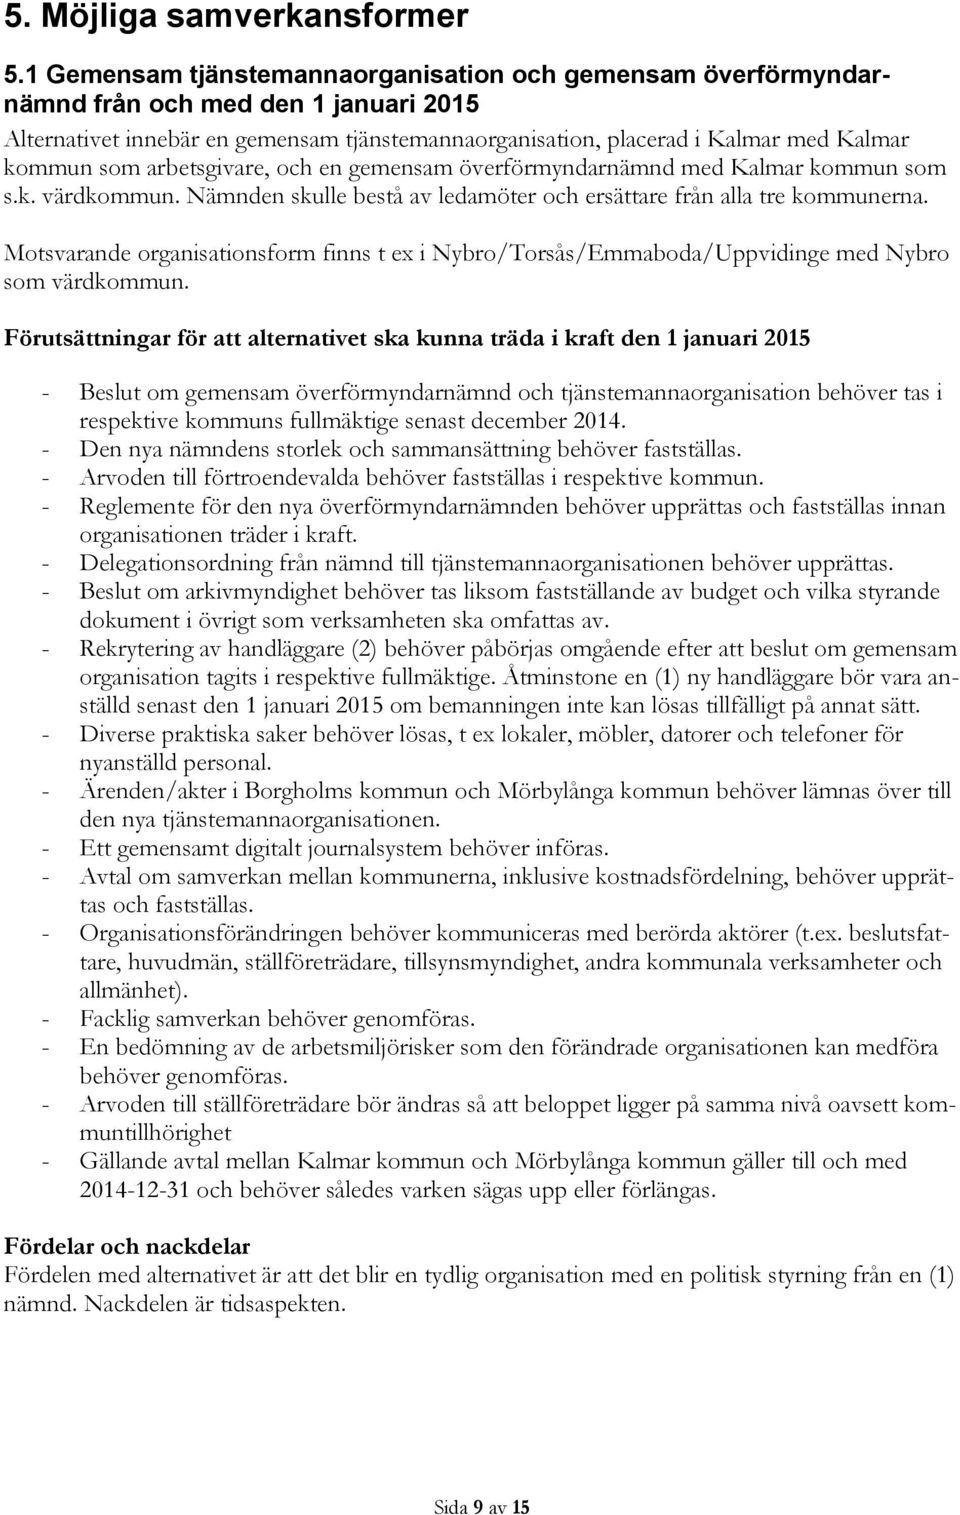 arbetsgivare, och en gemensam överförmyndarnämnd med Kalmar kommun som s.k. värdkommun. Nämnden skulle bestå av ledamöter och ersättare från alla tre kommunerna.